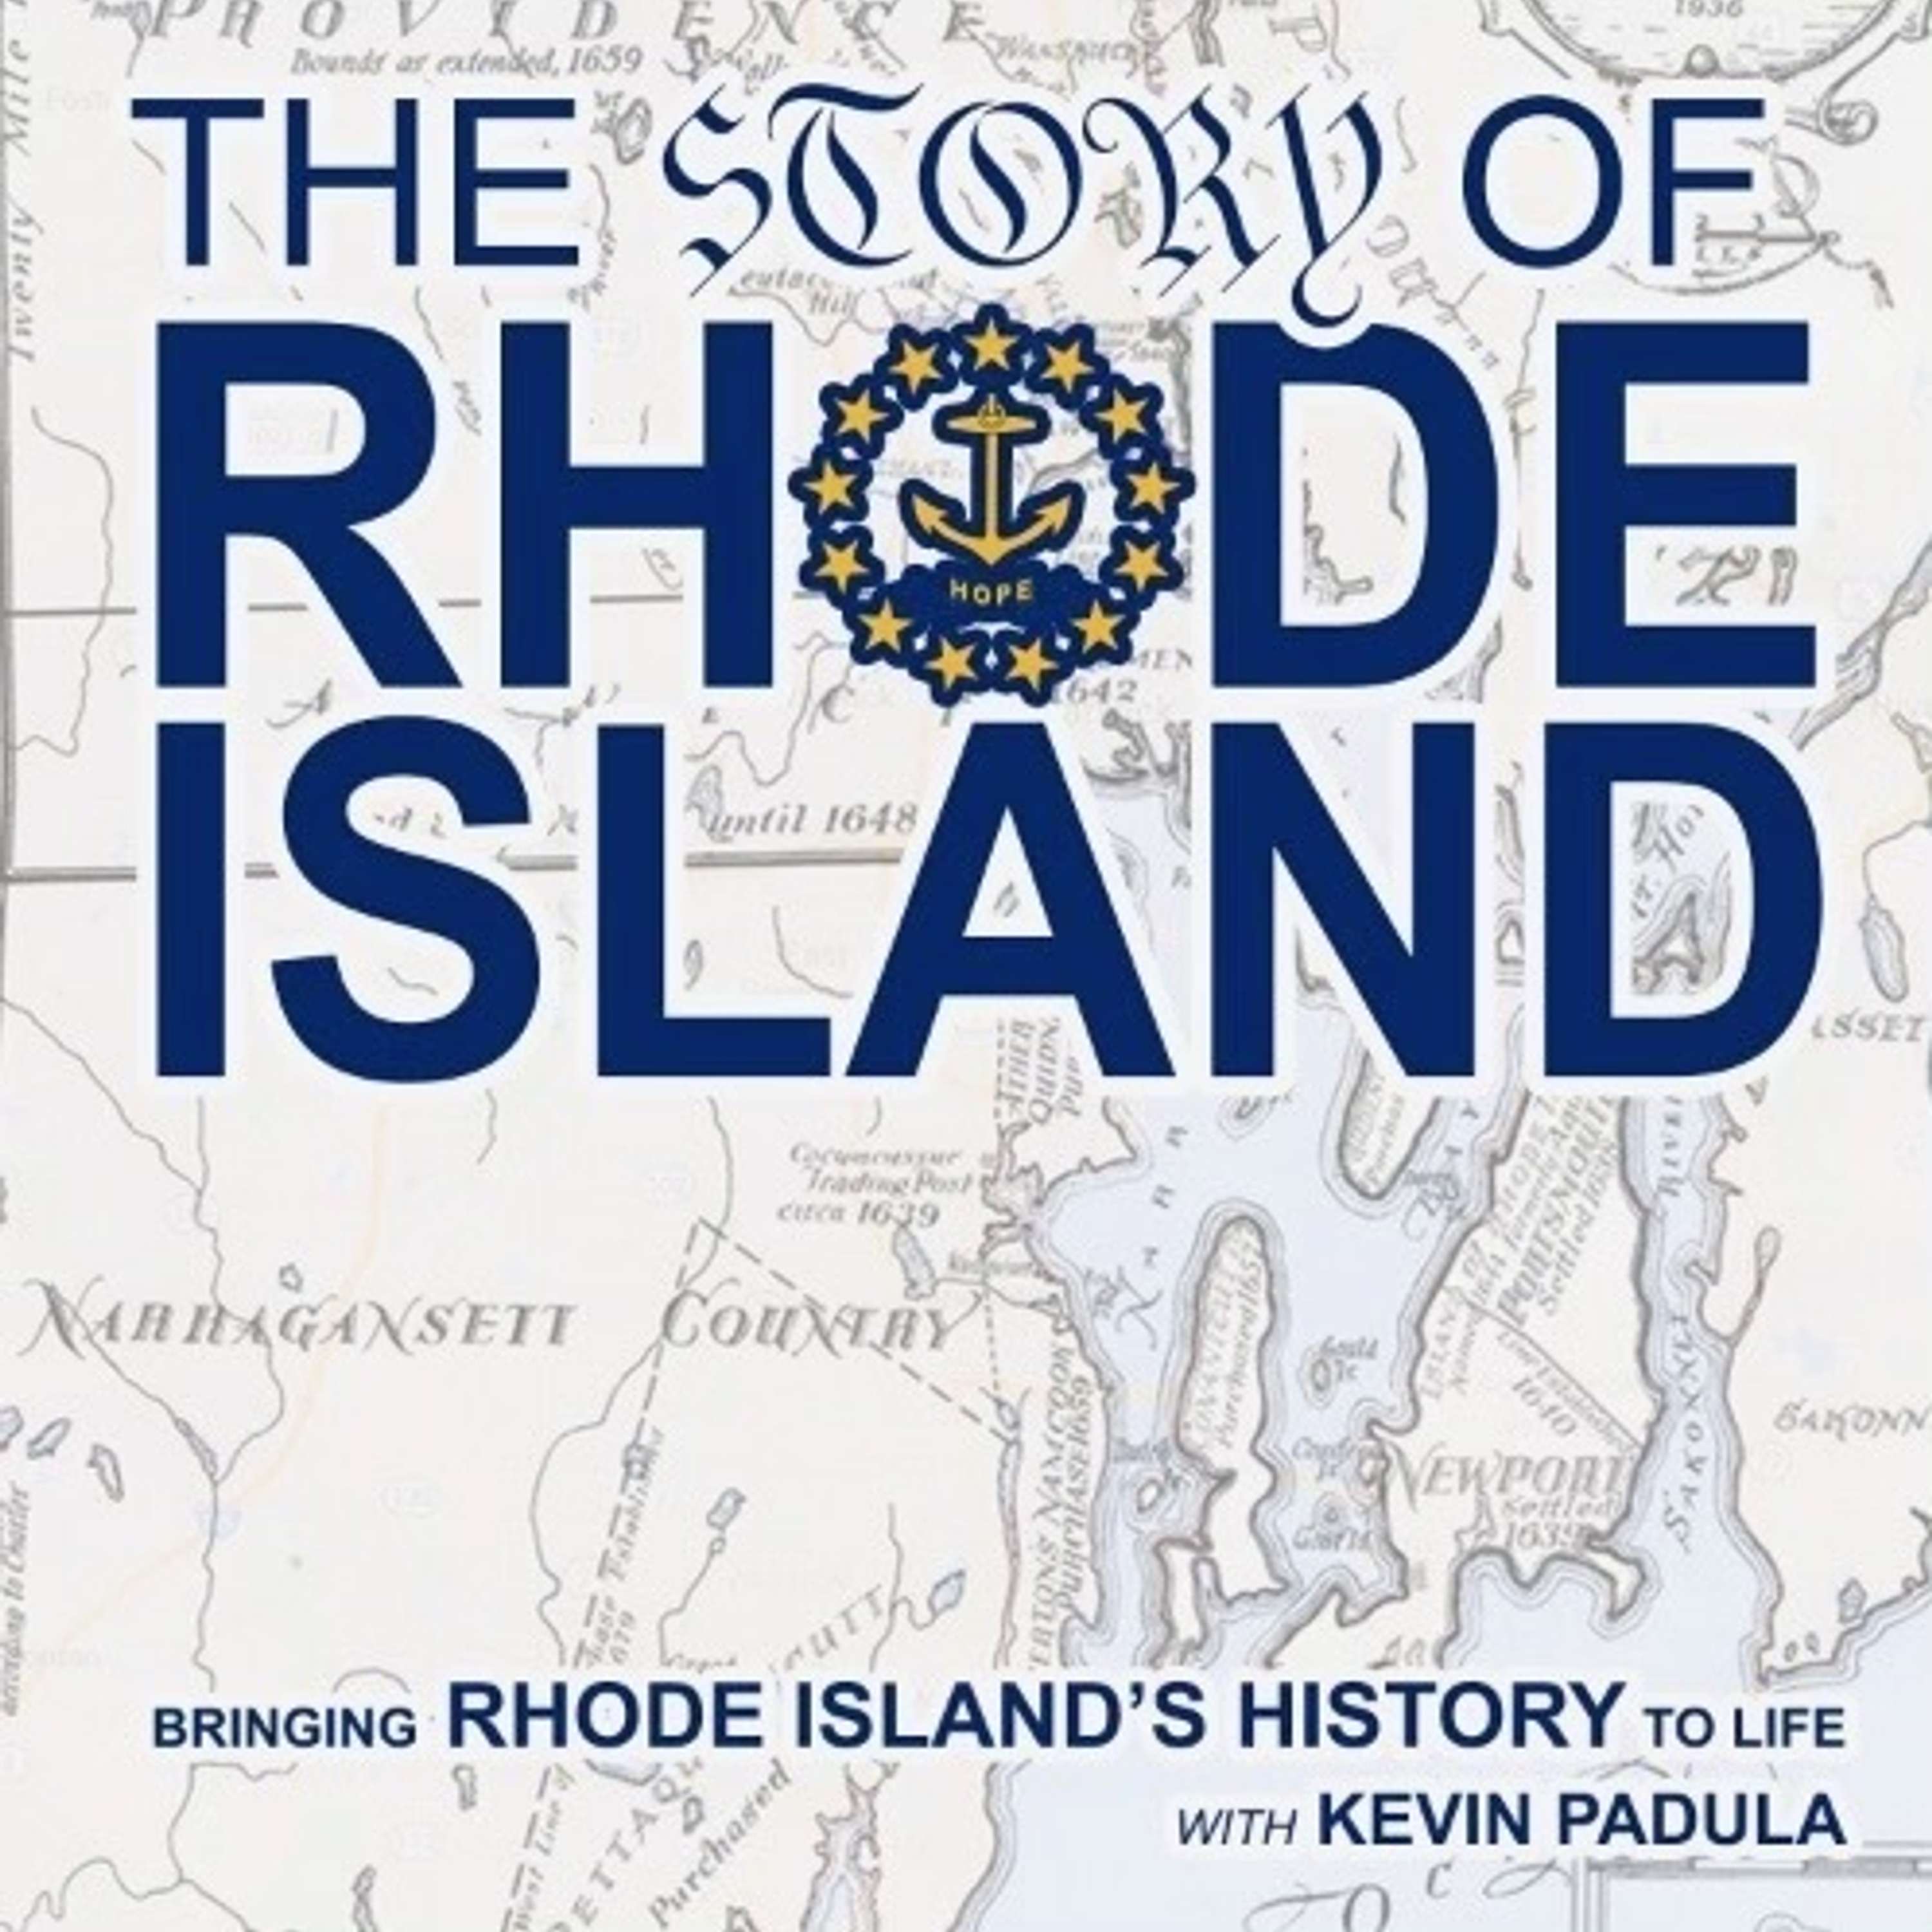 S2E7 - The Battle of Rhode Island